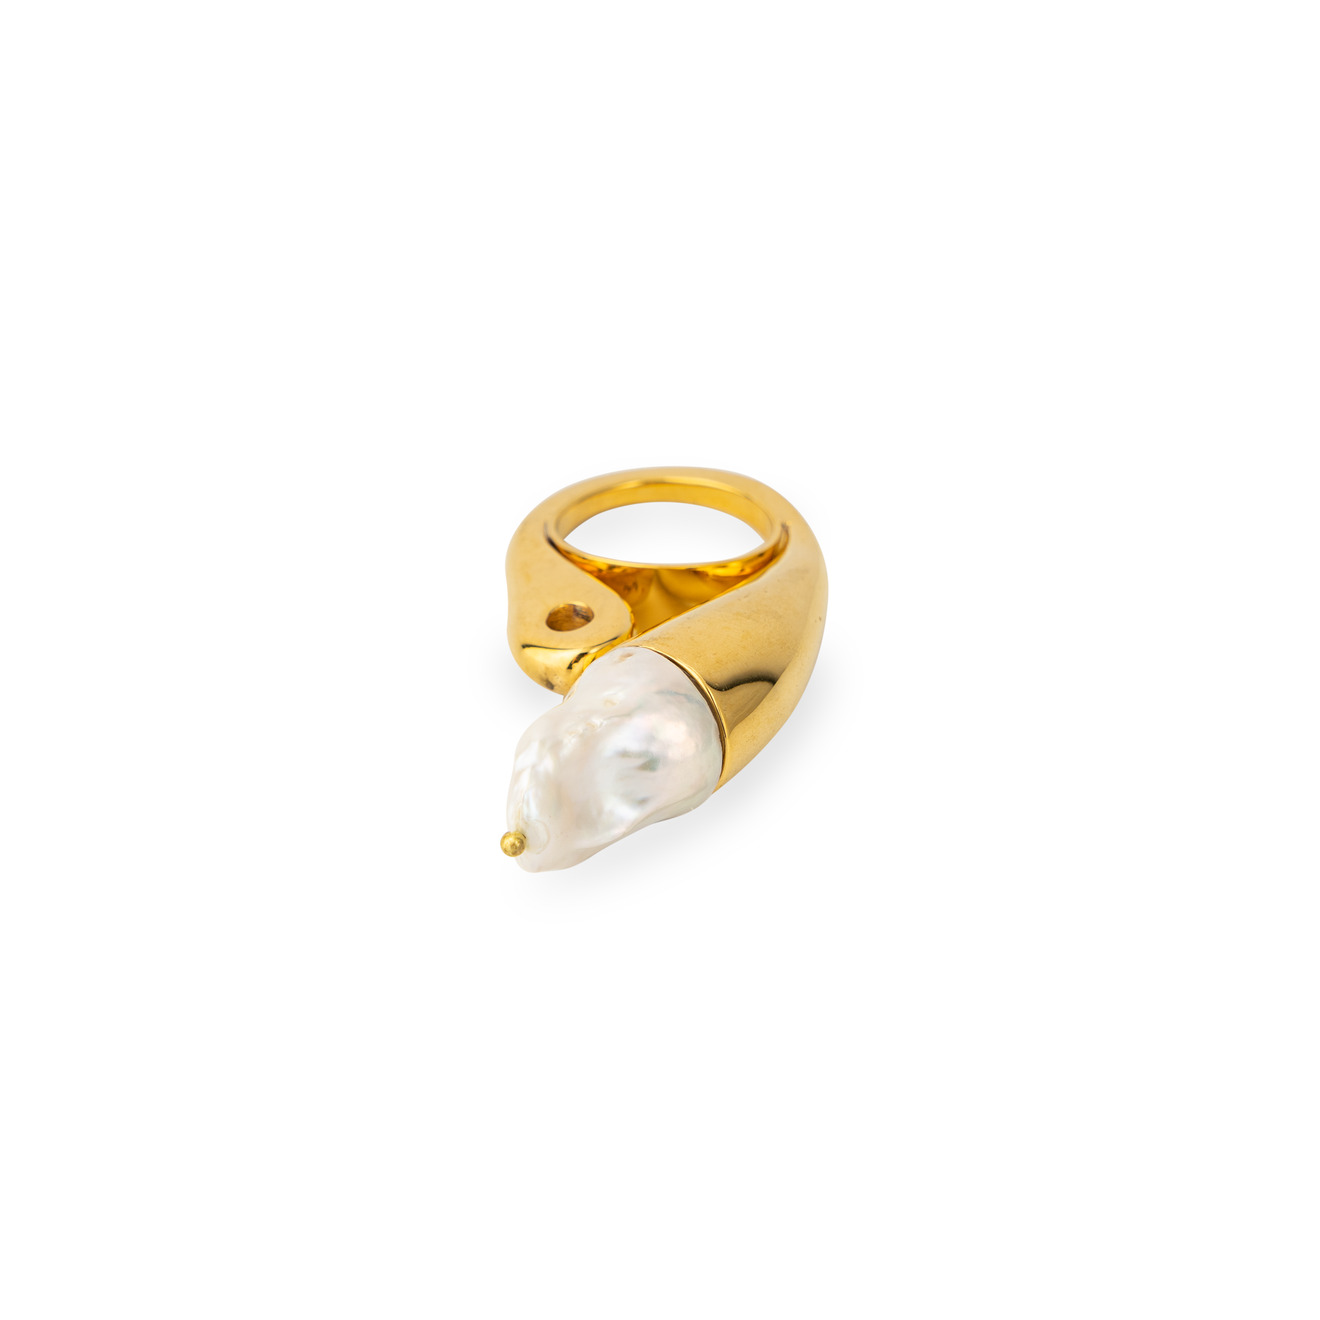 Janashia Объемное позолоченное кольцо с жемчугом фотографии